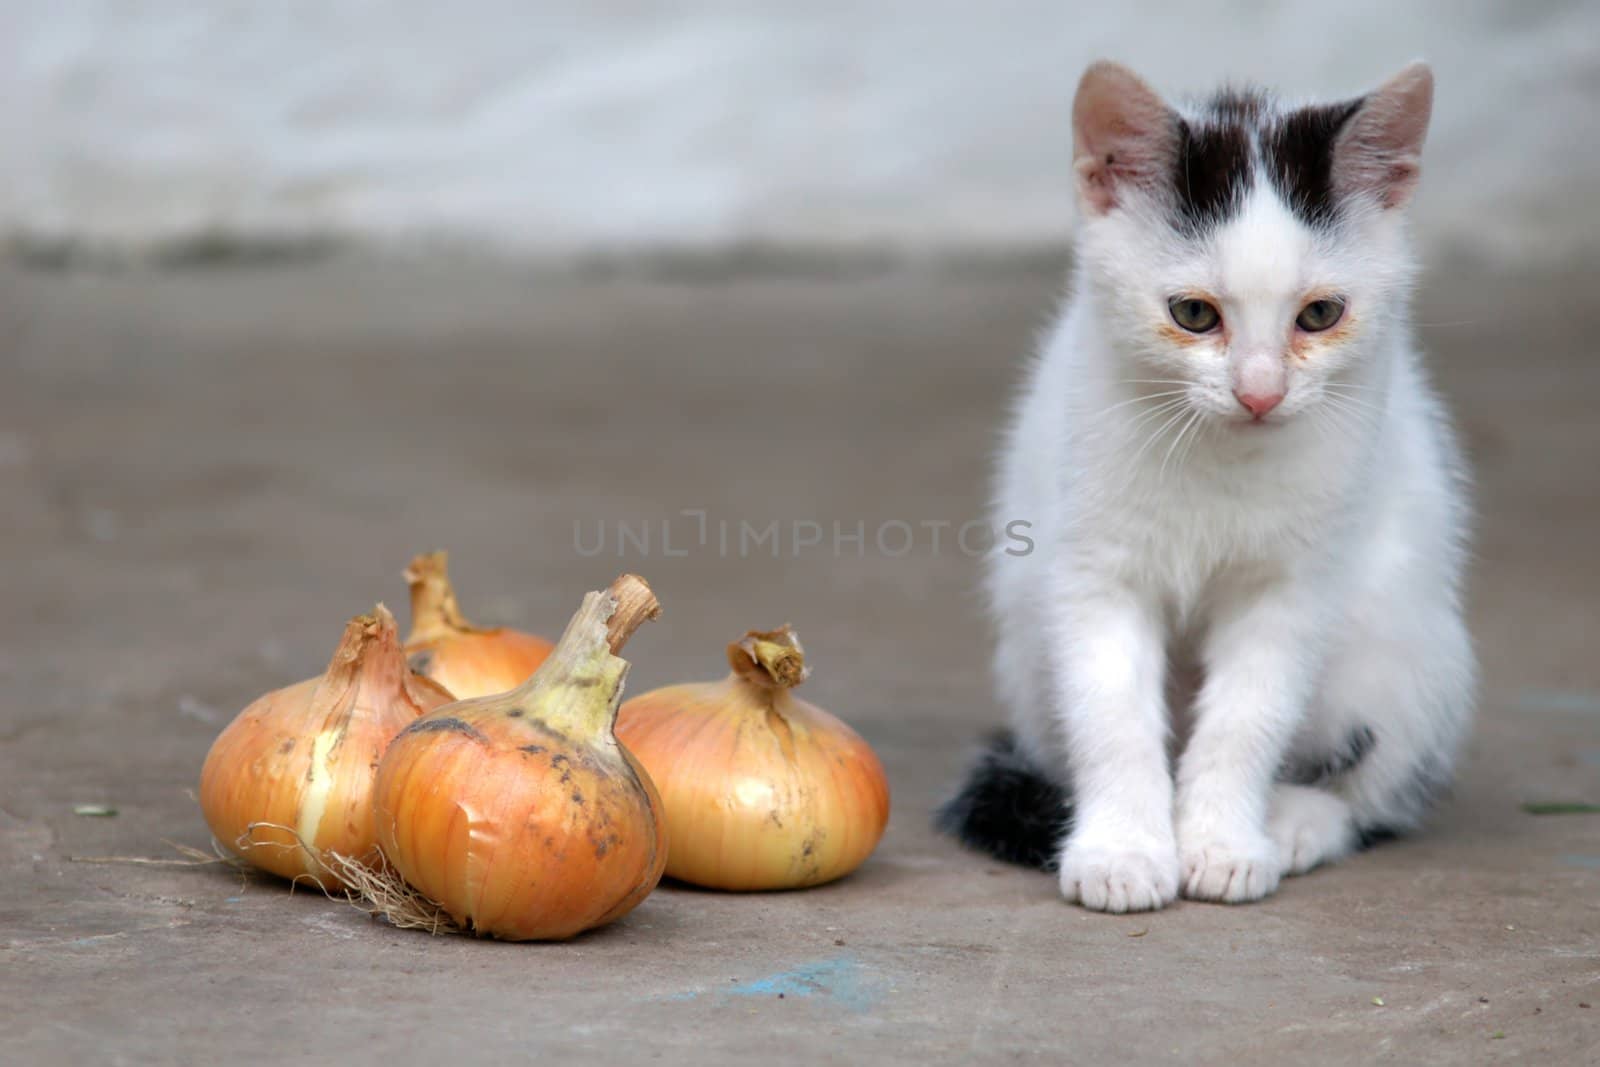 Little cat by velkol